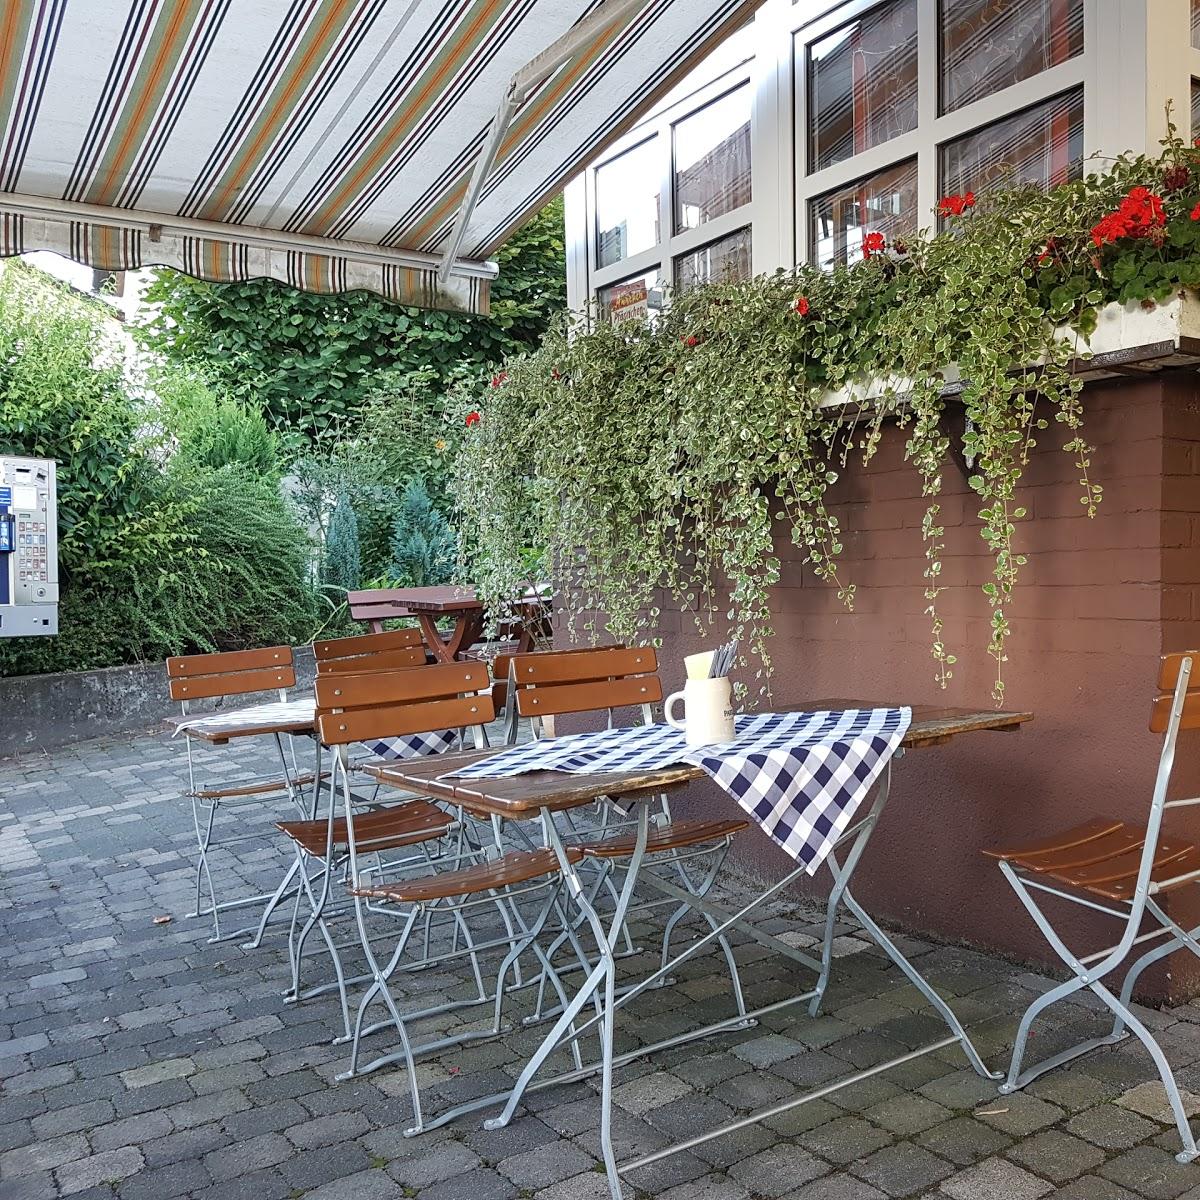 Restaurant "Restaurant Kurfürst" in  Neunkirchen-Seelscheid